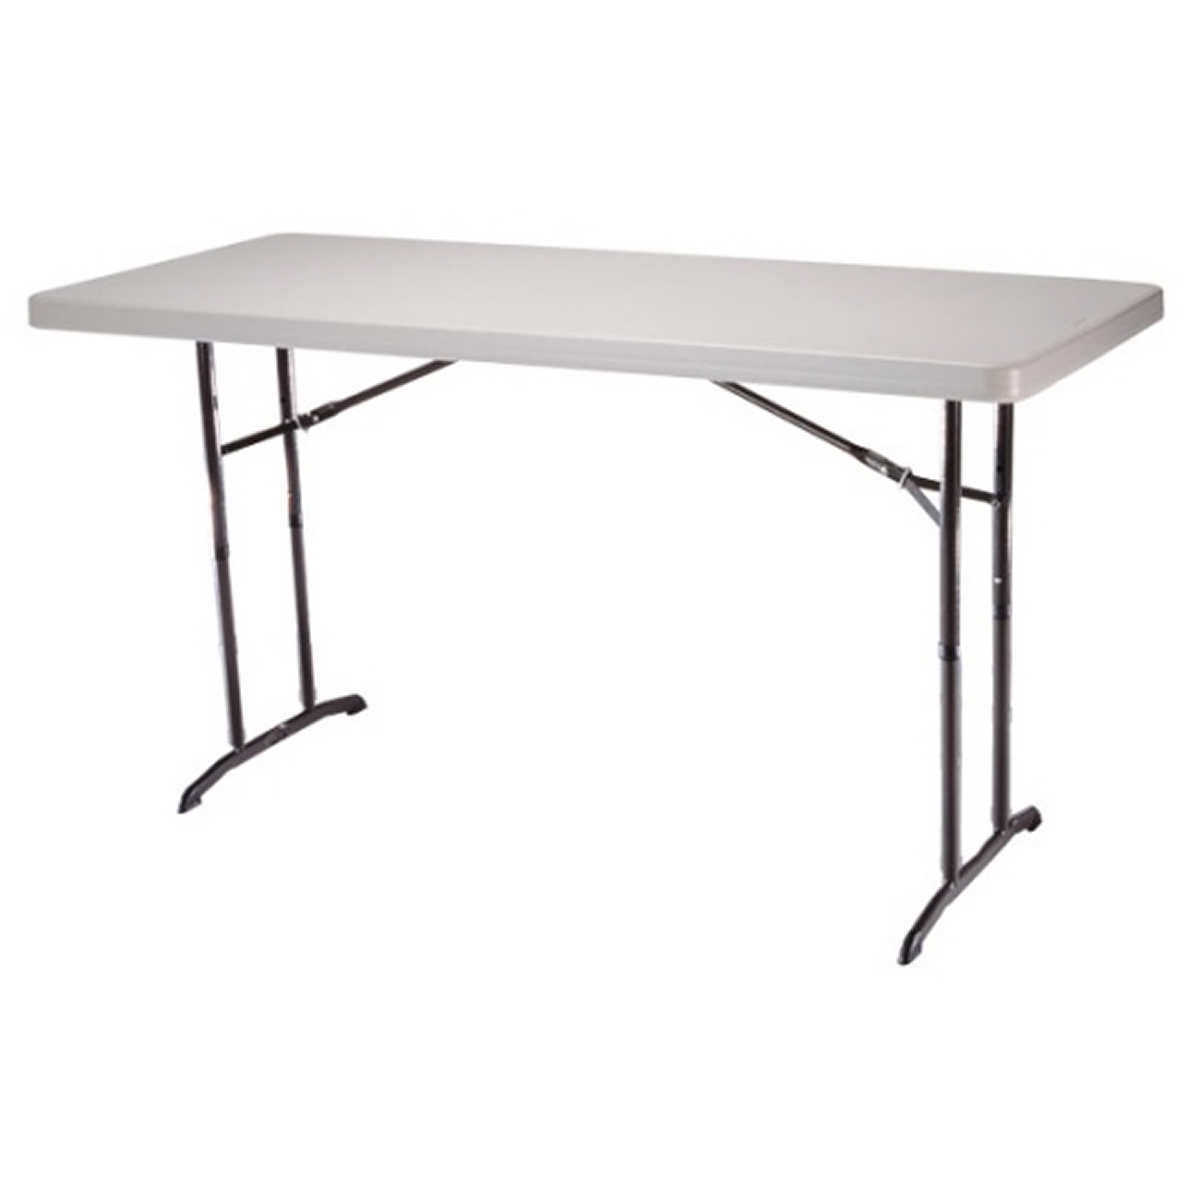 Adjustable Foldable Table